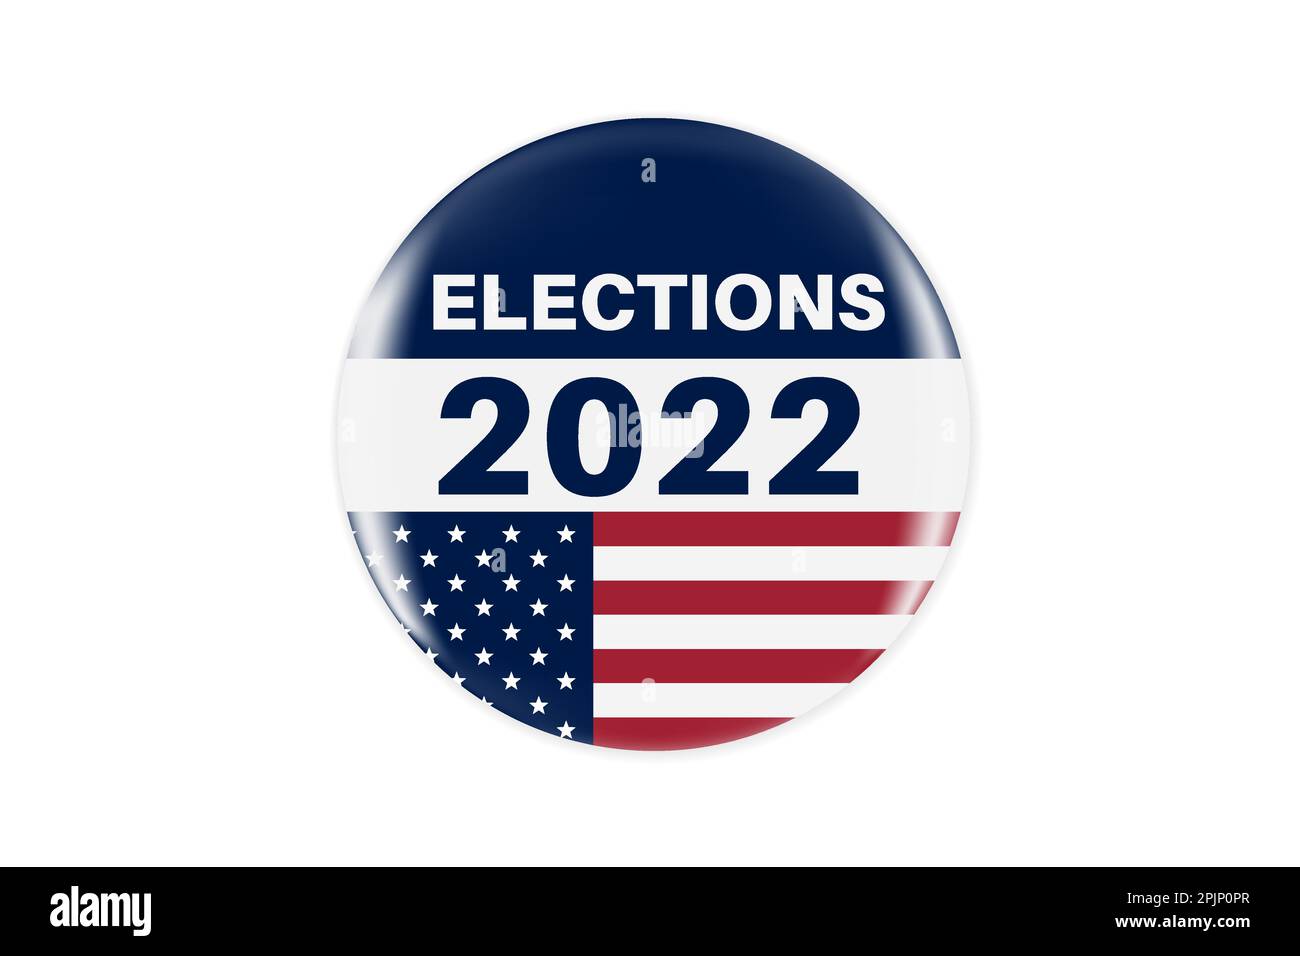 Realistischer Kreis Vote Aufkleber oder Abzeichen mit uns amerikanischen Flagge. US, USA, amerikanische Wahl, Stimmschild. Zwischenwahlen 2022. Abzeichen für die verantwortliche Abstimmung Stock Vektor